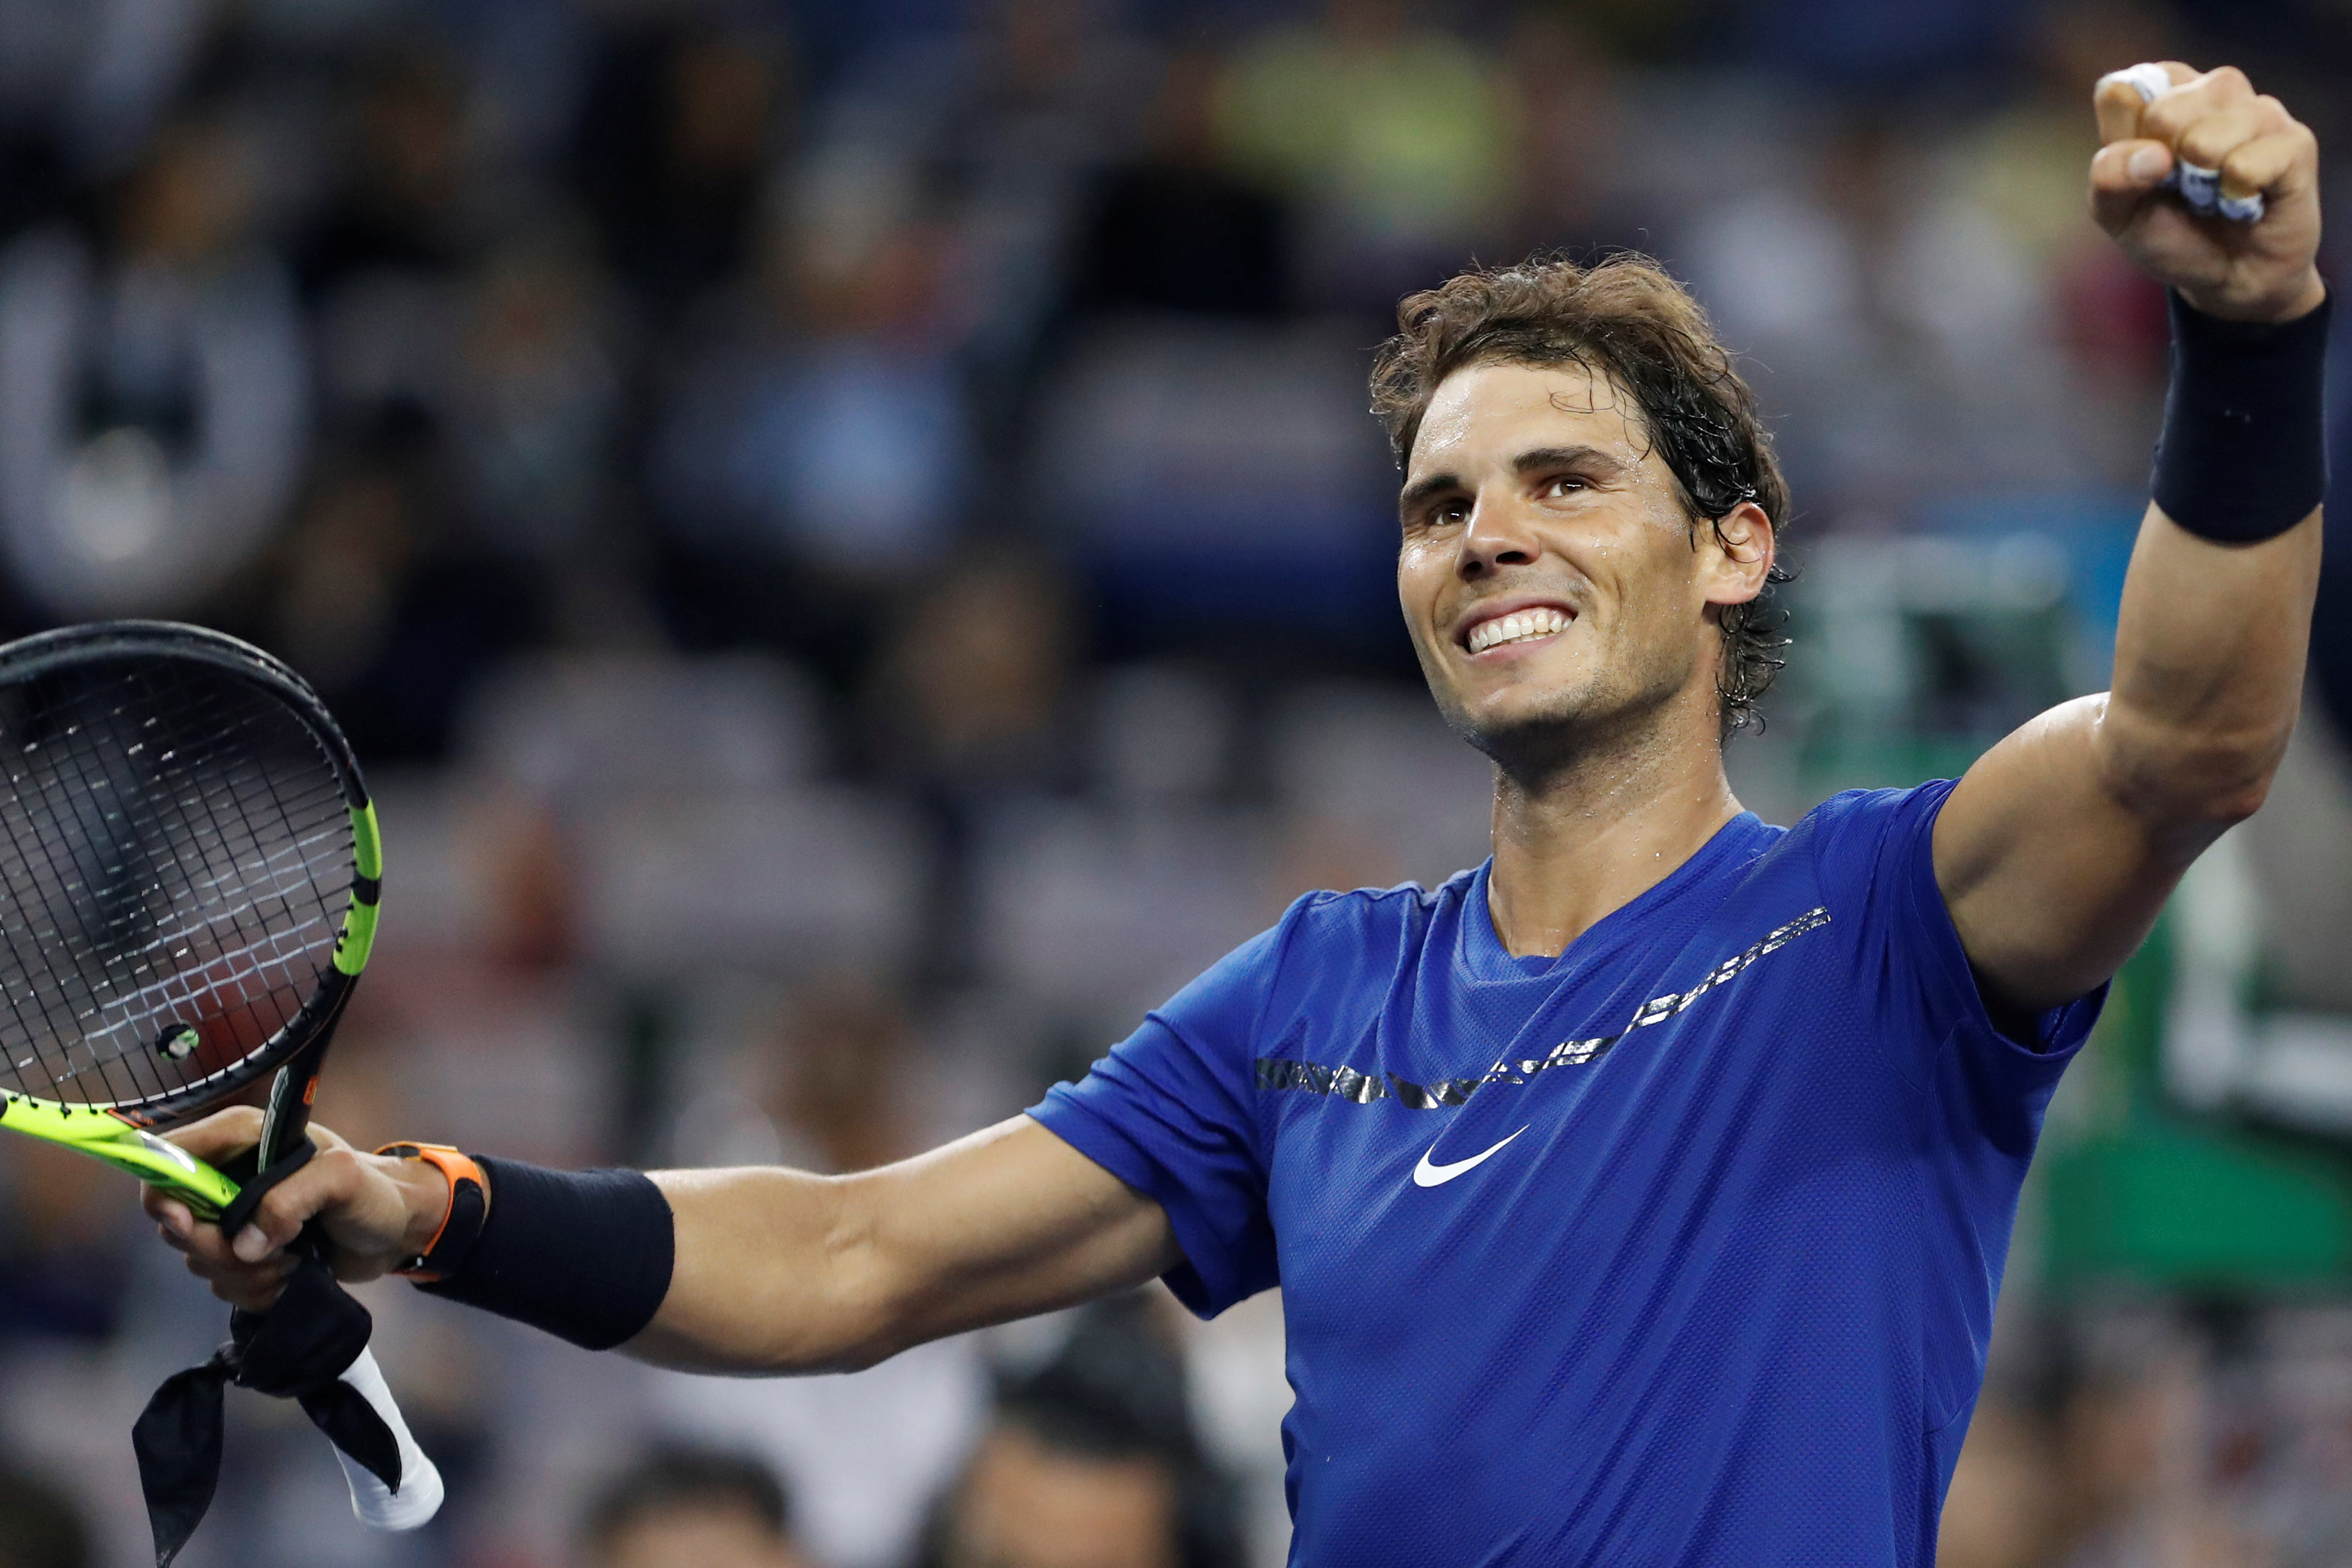 Nadal tiếp tục thể hiện phong độ ấn tượng tại Thượng Hải. Ảnh: REUTERS